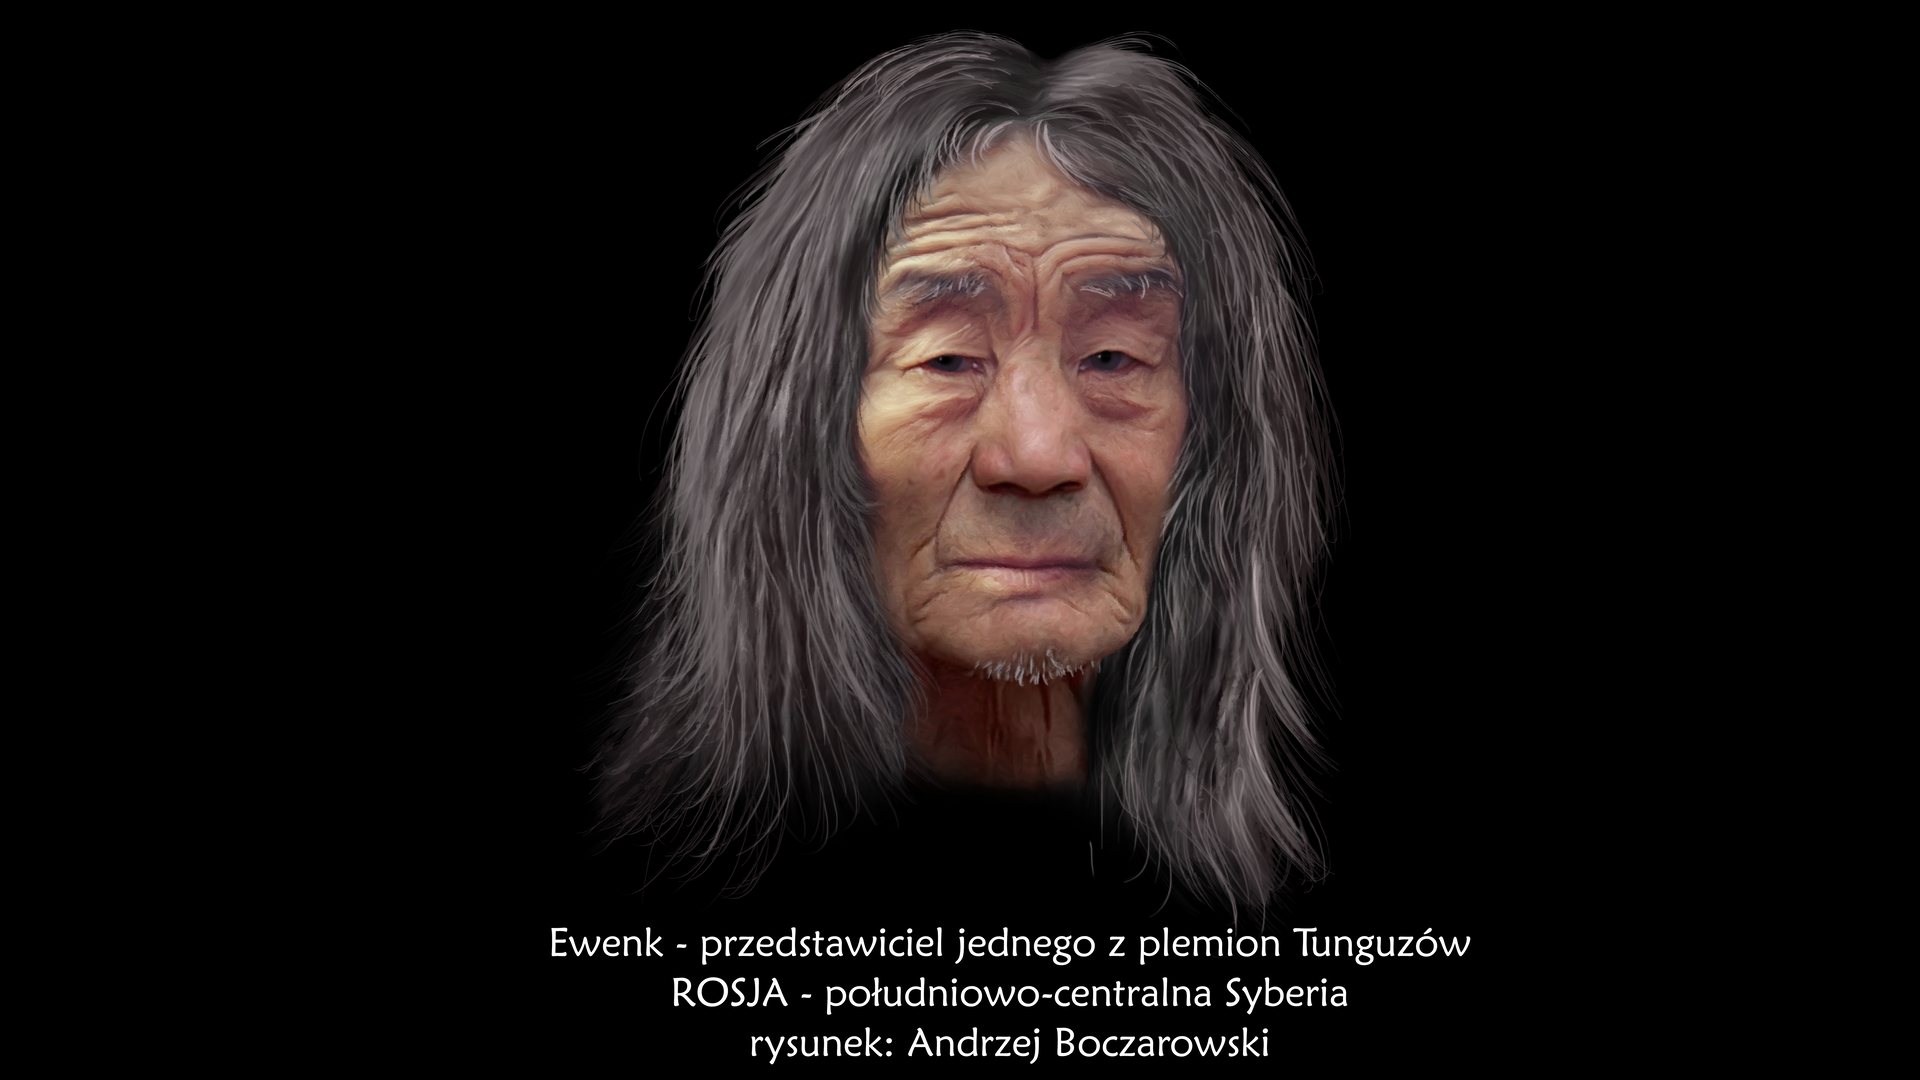 Ilustracja prezentuje portret Ewenka. Jest to starszy mężczyzna o jasnej karnacji, pociągłej płaskiej twarzy, krótkim czole ze zmarszczkami oraz długich czarnych włosach z pasmami siwych włosów.